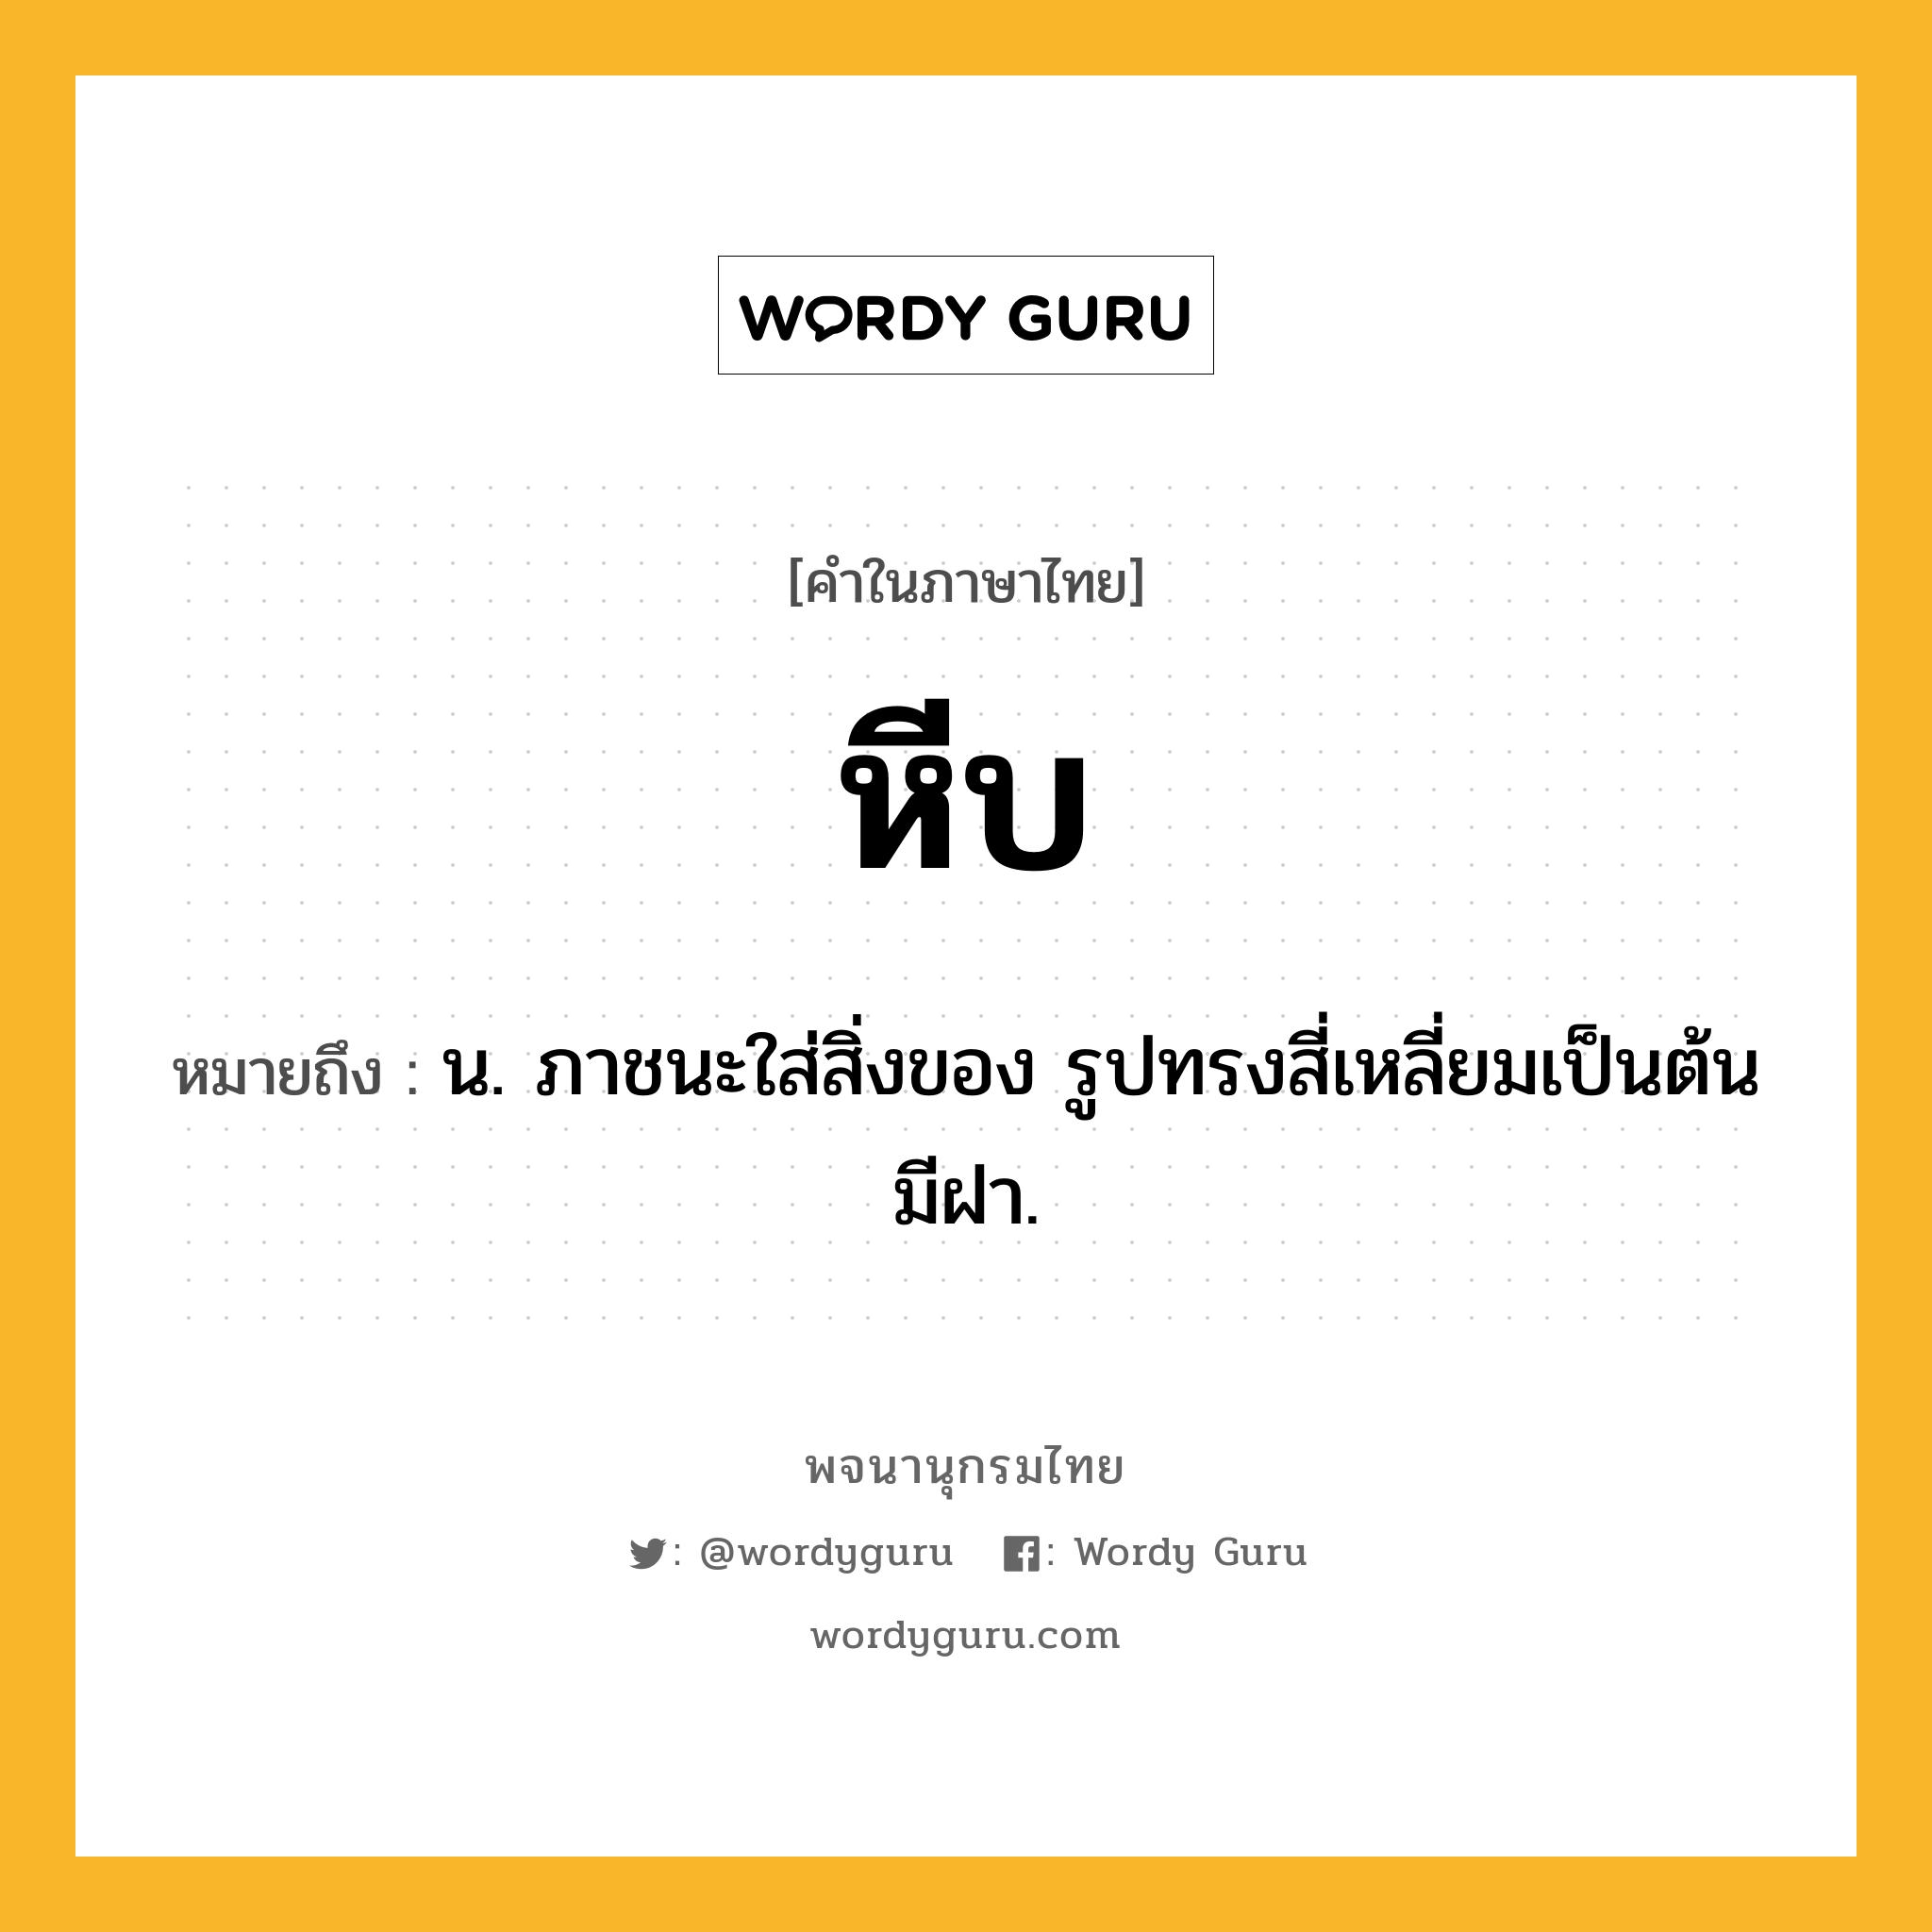 หีบ ความหมาย หมายถึงอะไร?, คำในภาษาไทย หีบ หมายถึง น. ภาชนะใส่สิ่งของ รูปทรงสี่เหลี่ยมเป็นต้น มีฝา.